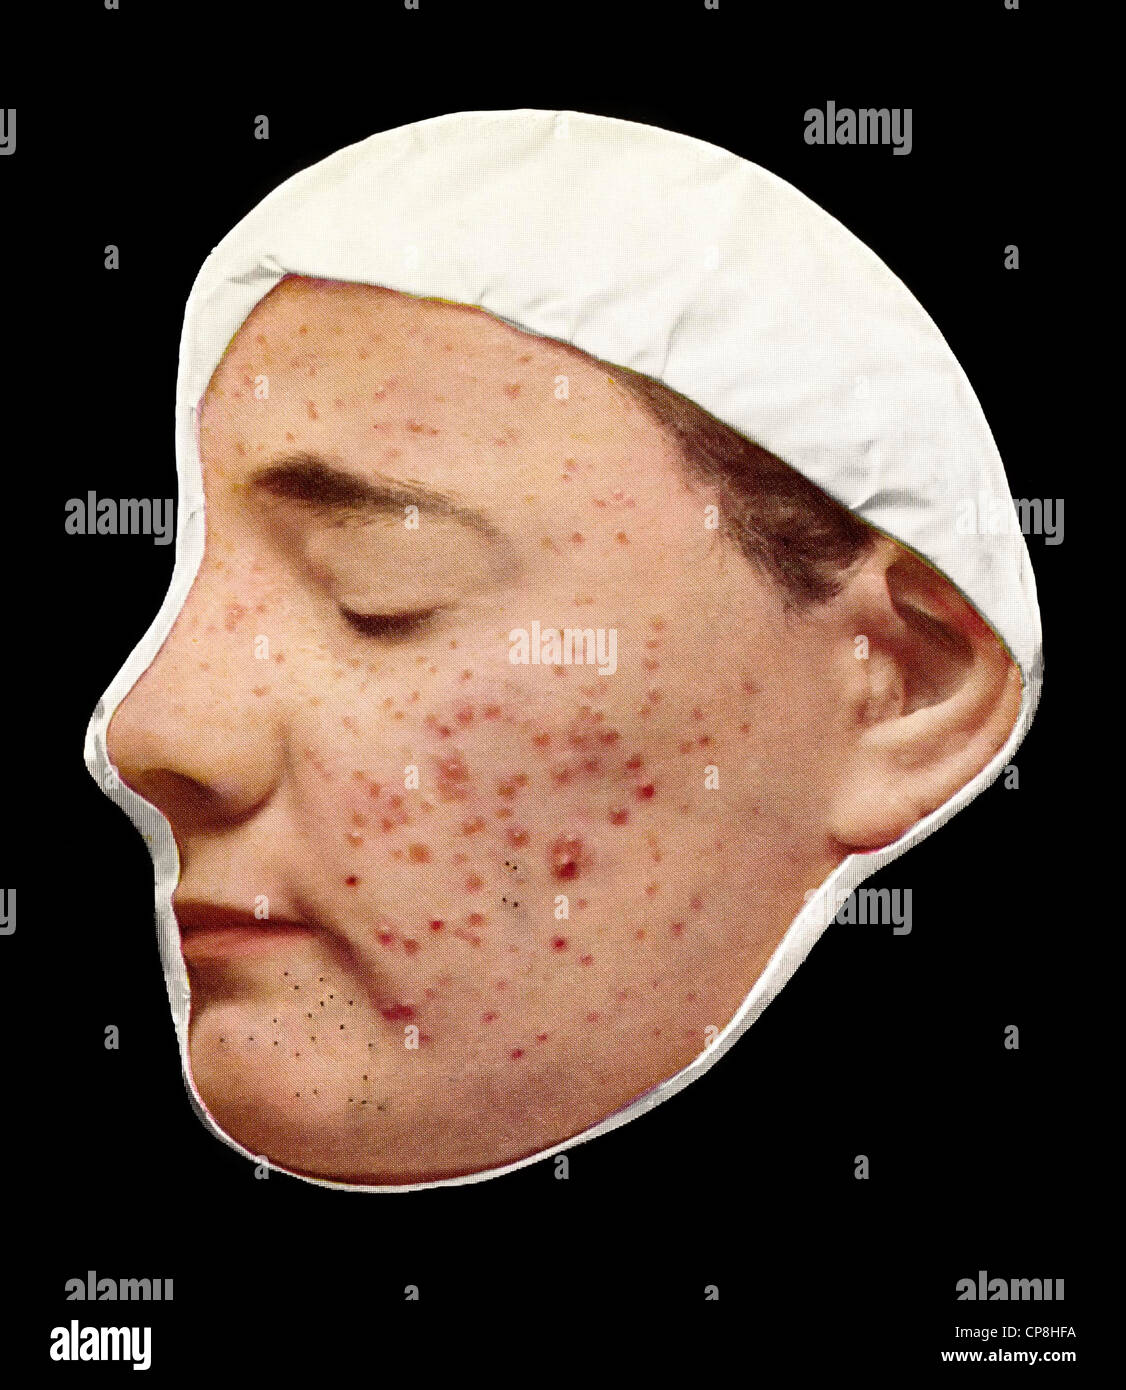 Hautkrankheiten immagini e fotografie stock ad alta risoluzione - Alamy